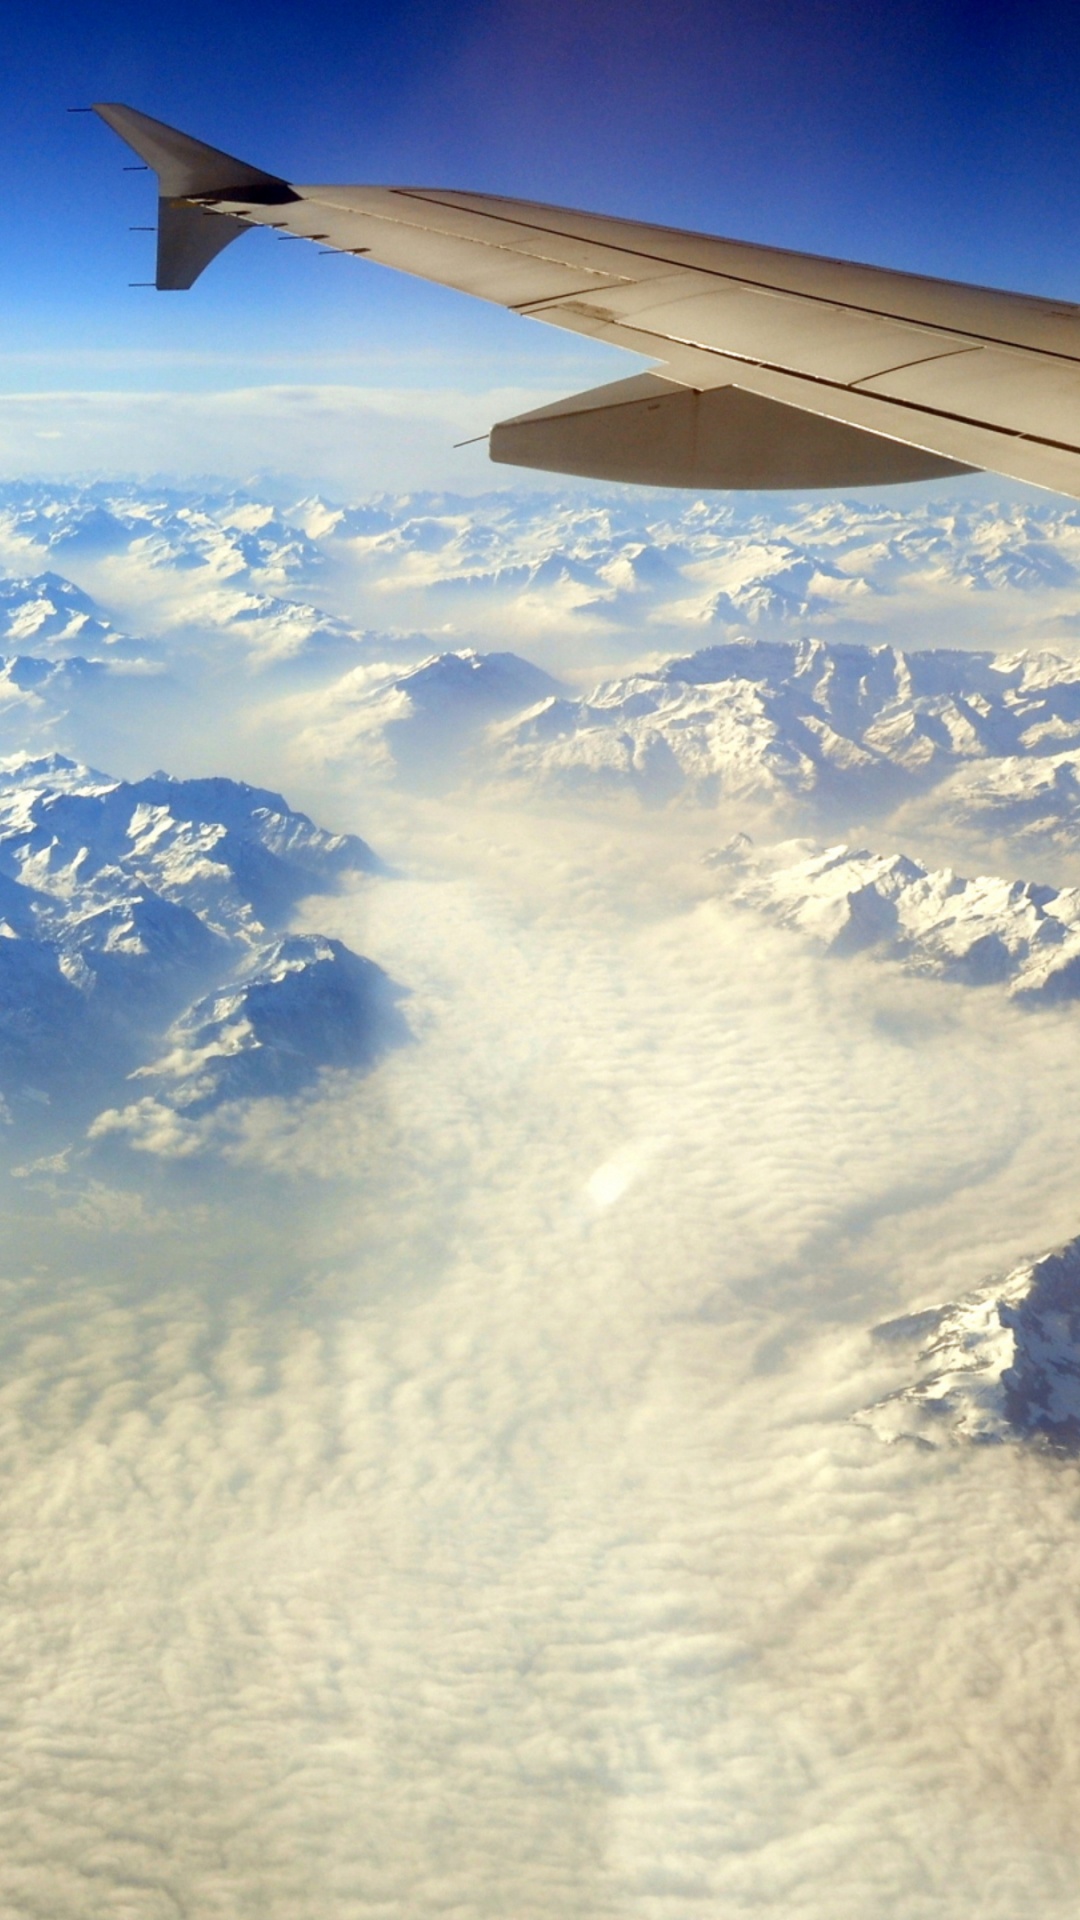 Nuages Blancs Au-dessus Des Montagnes Couvertes de Neige Pendant la Journée. Wallpaper in 1080x1920 Resolution